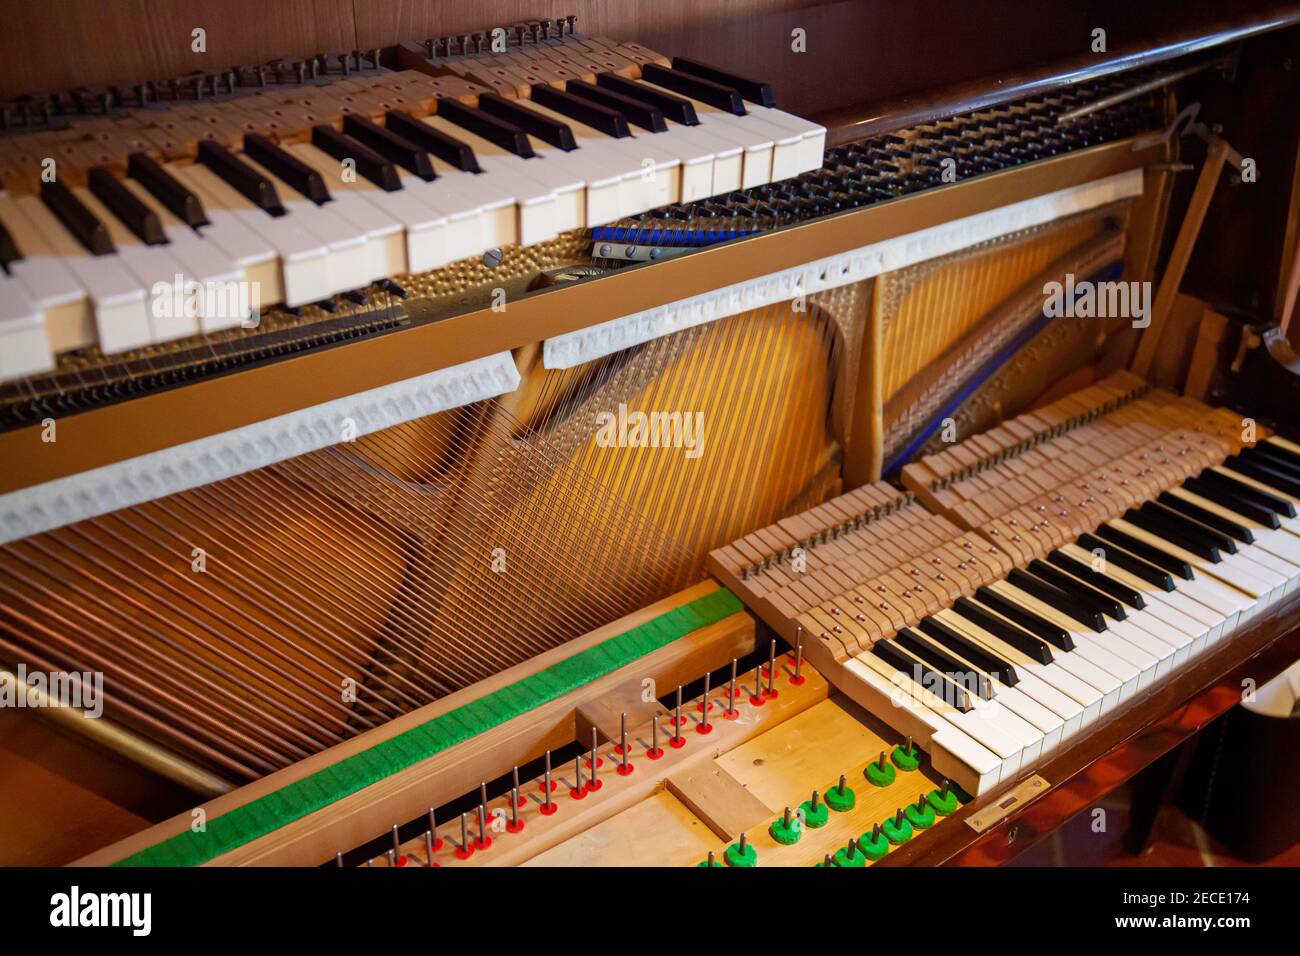 Piano vertical démonté pour réparation, entretien, réglage, nettoyage. Piano ouvert avec panneau sonore et chaîne visible. Banque D'Images